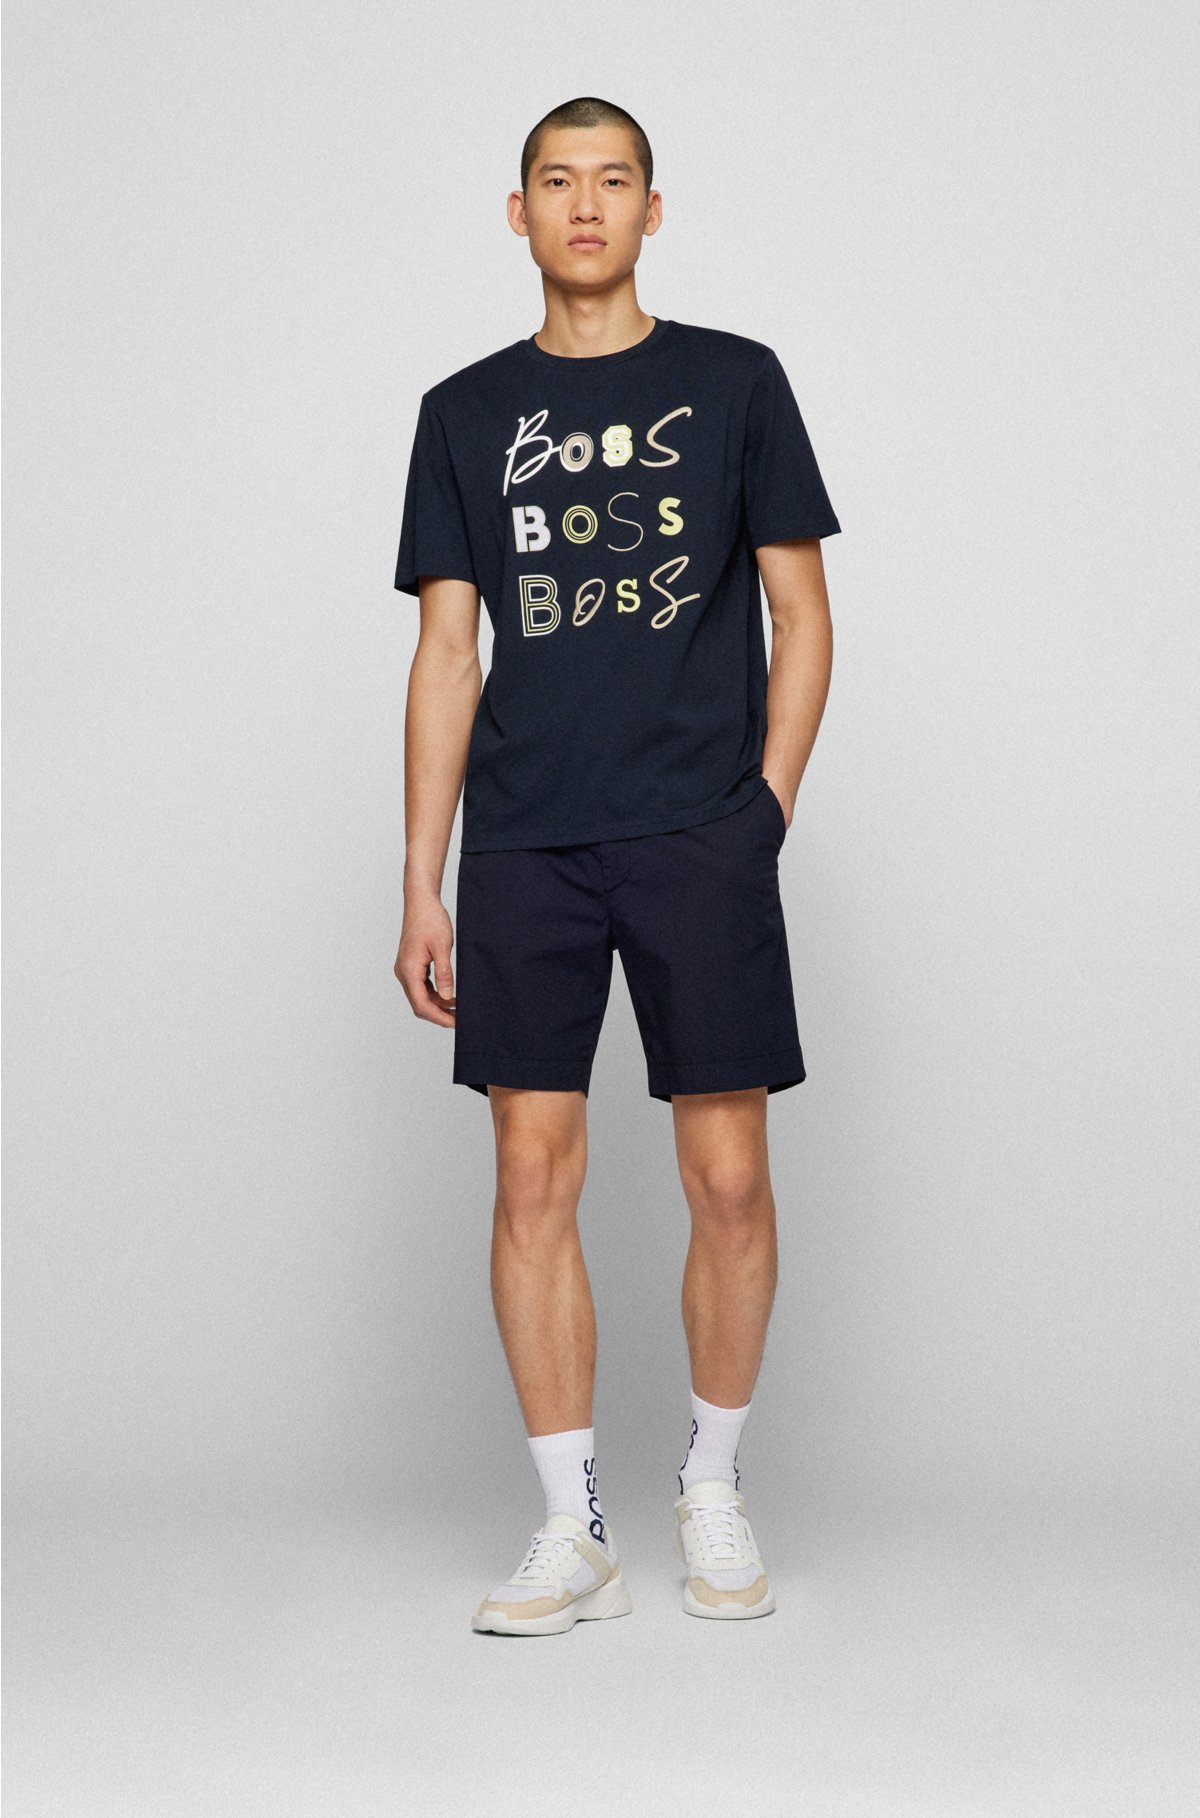 Forest Cotton Plain Round Neck Tee  Baju T Shirt Lelaki - 621191 – Forest  Clothing